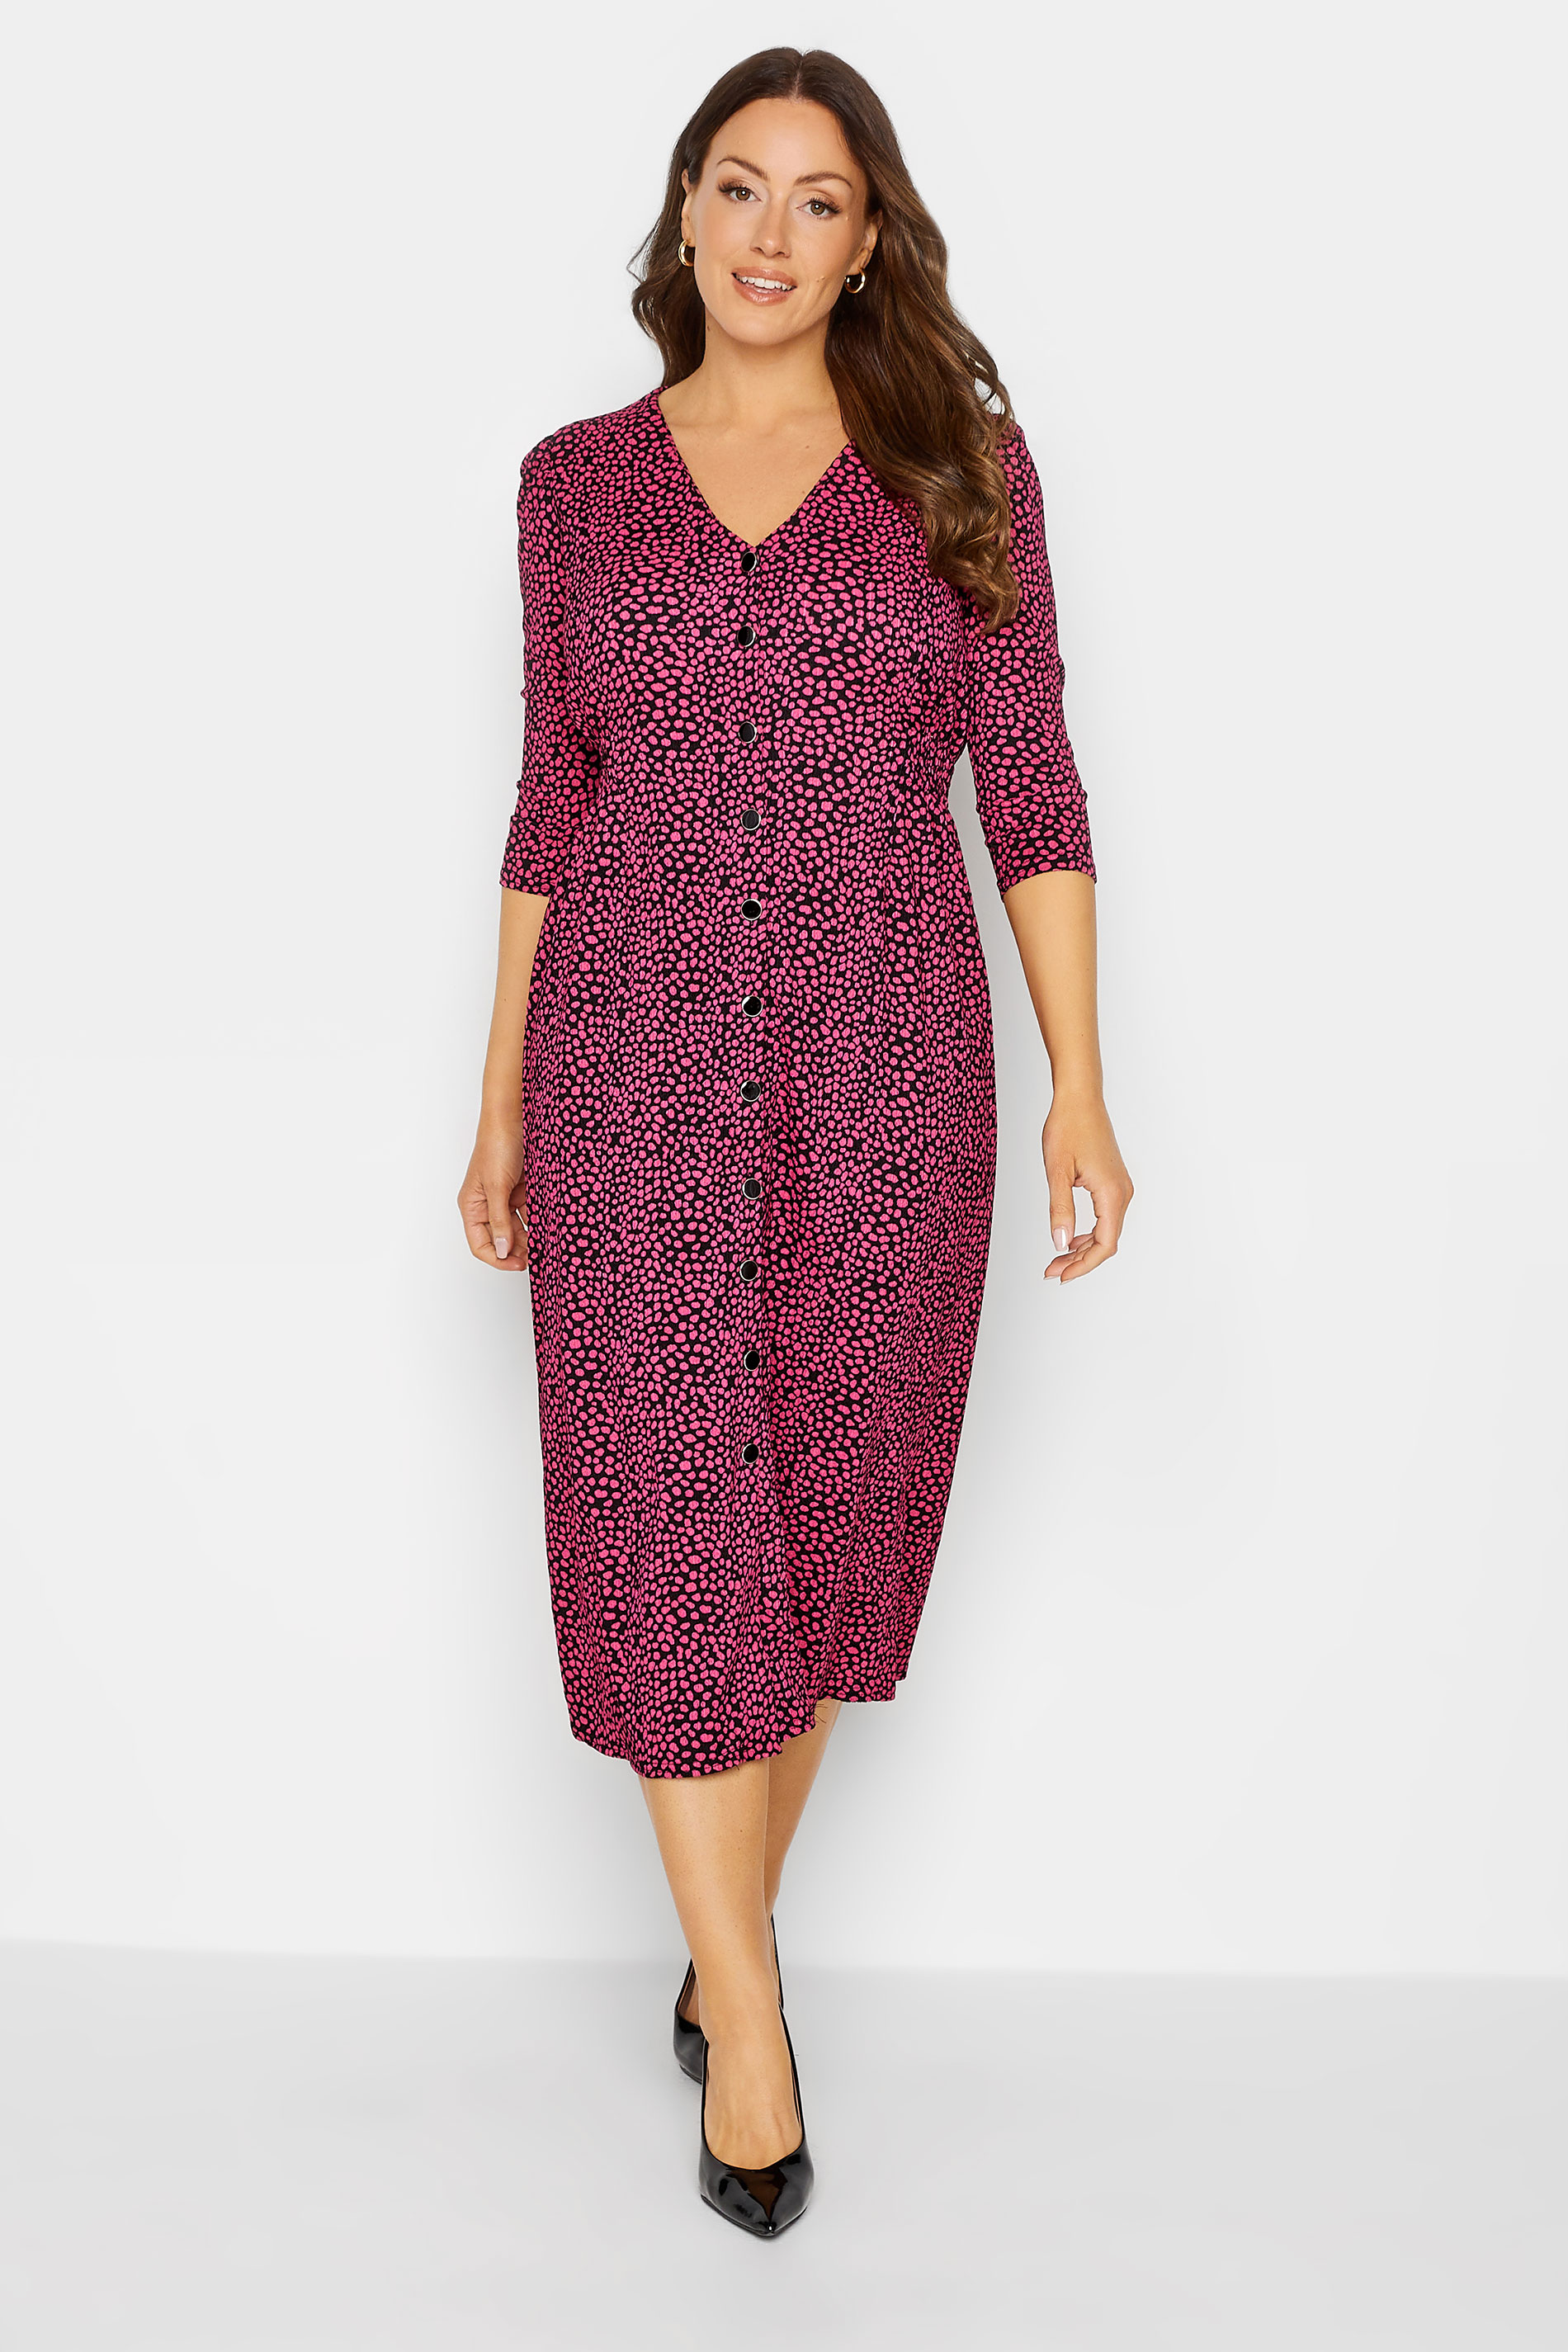 M&Co Pink Spot Print Button Through Midi Dress | M&Co 2